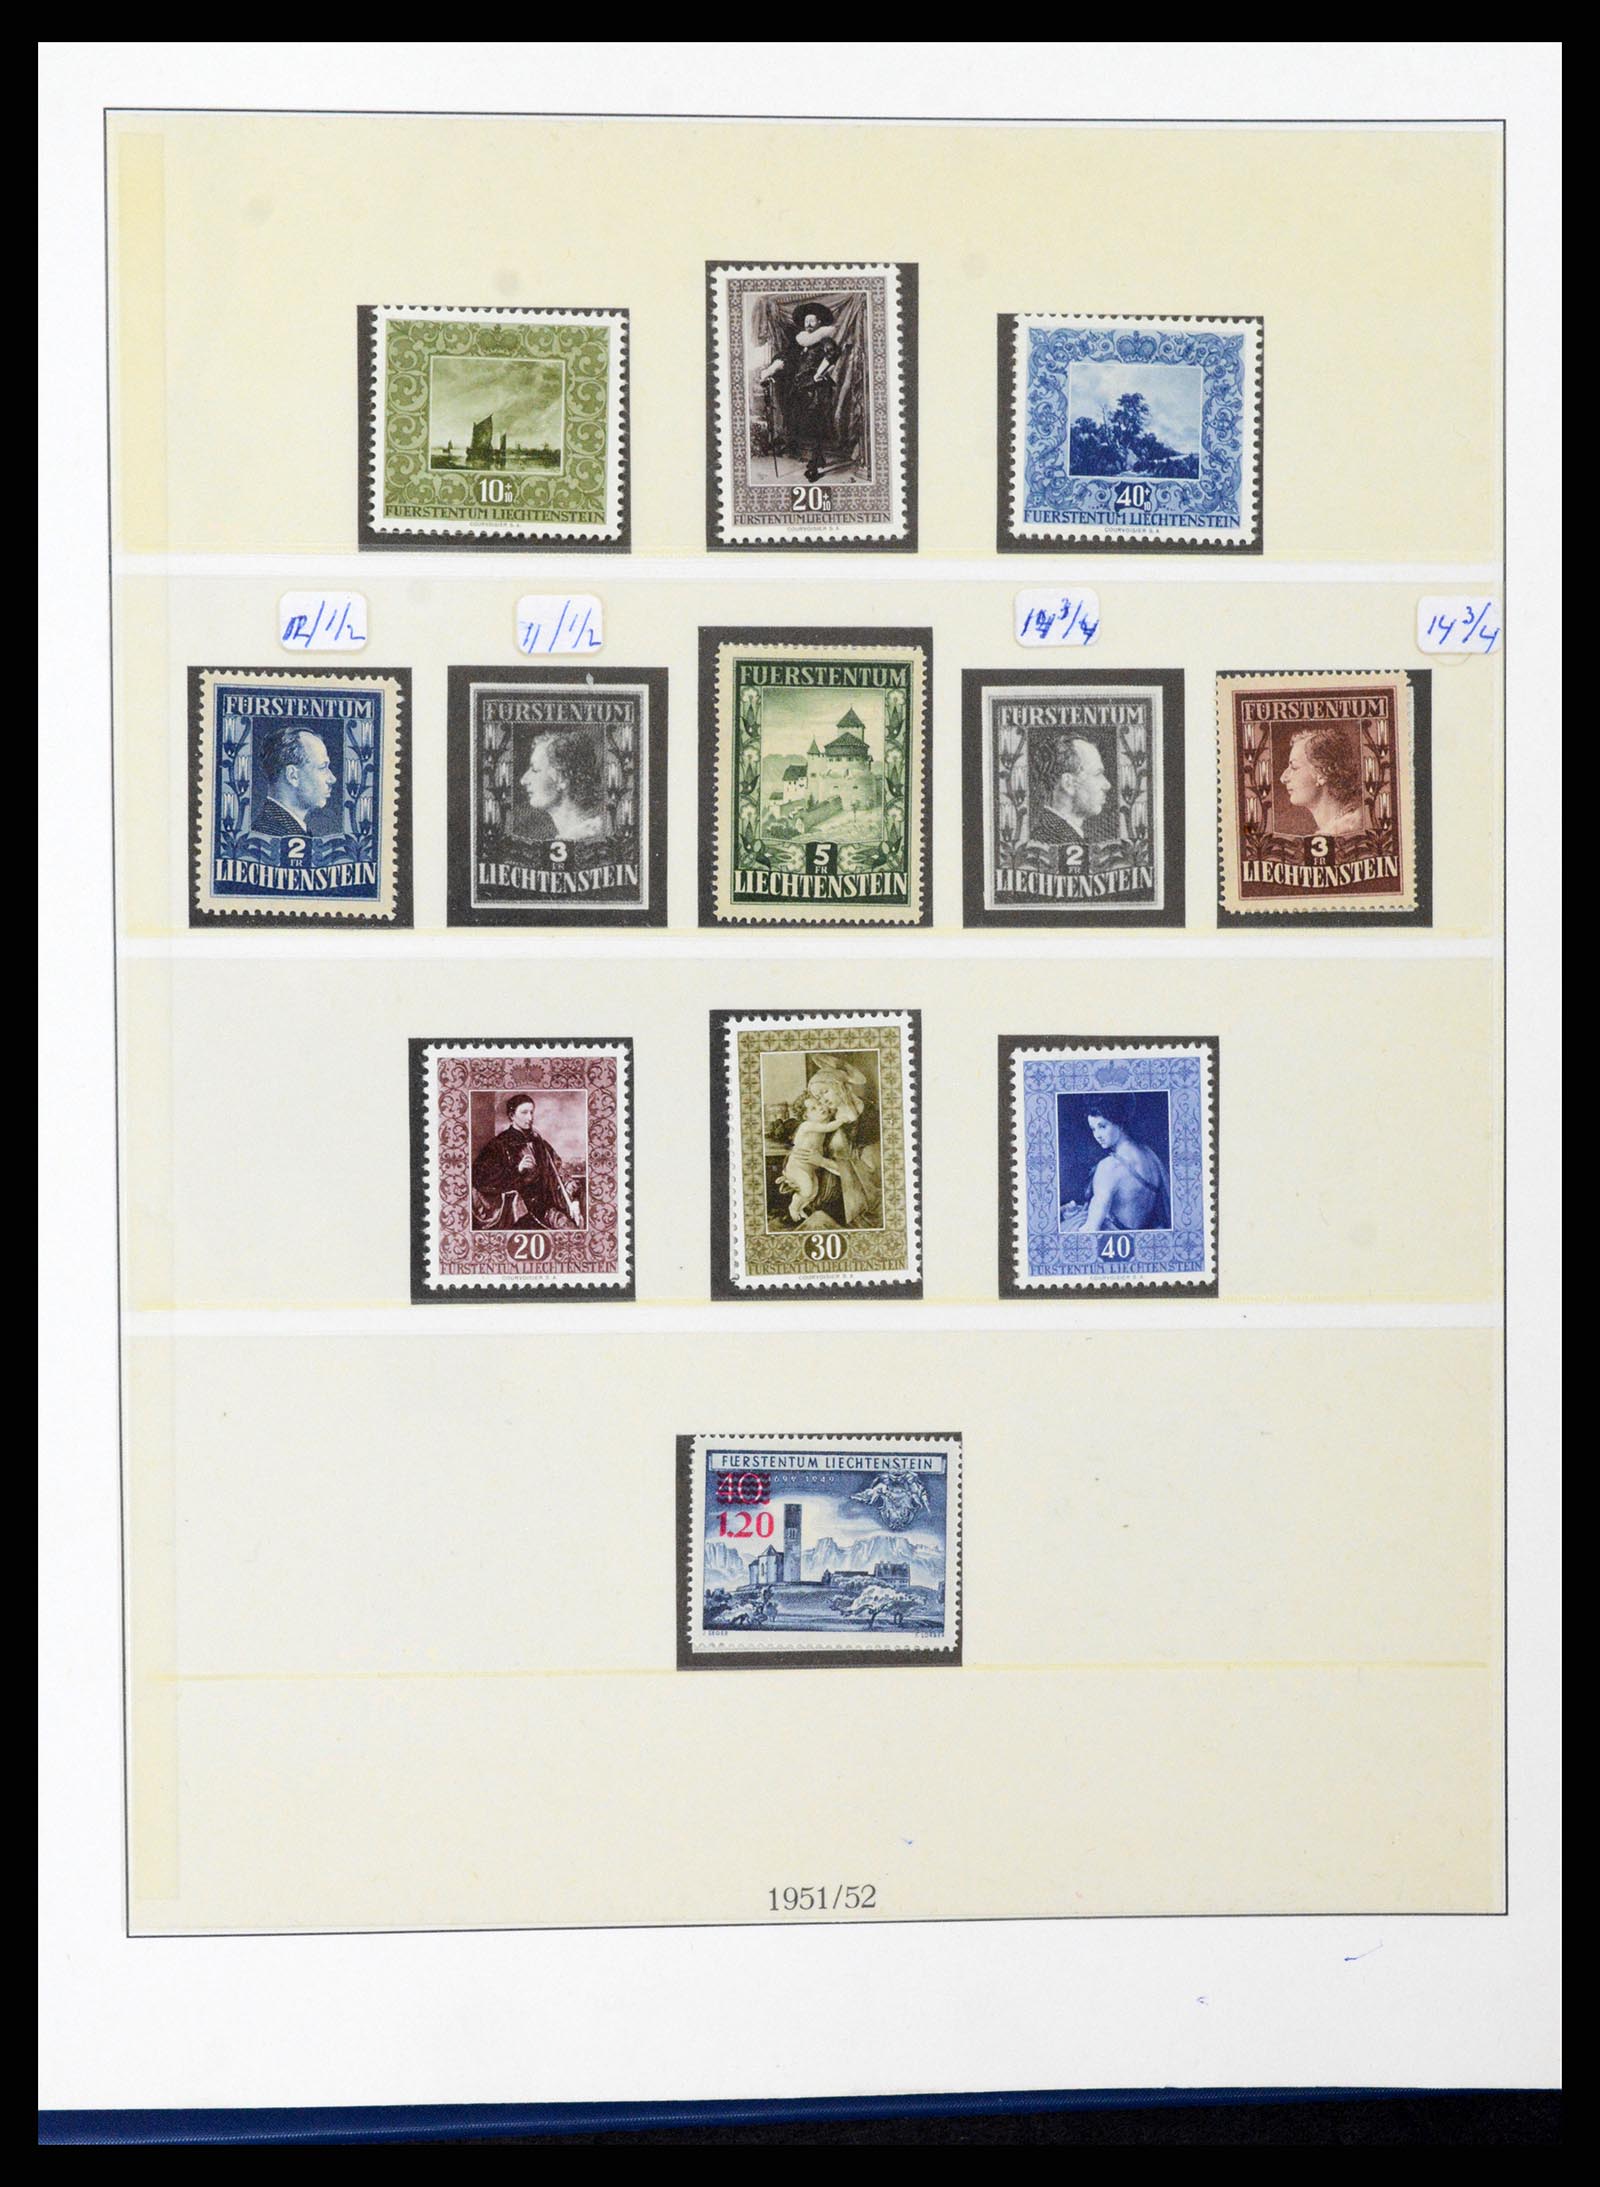 37295 023 - Stamp collection 37295 Liechtenstein 1912-2009.